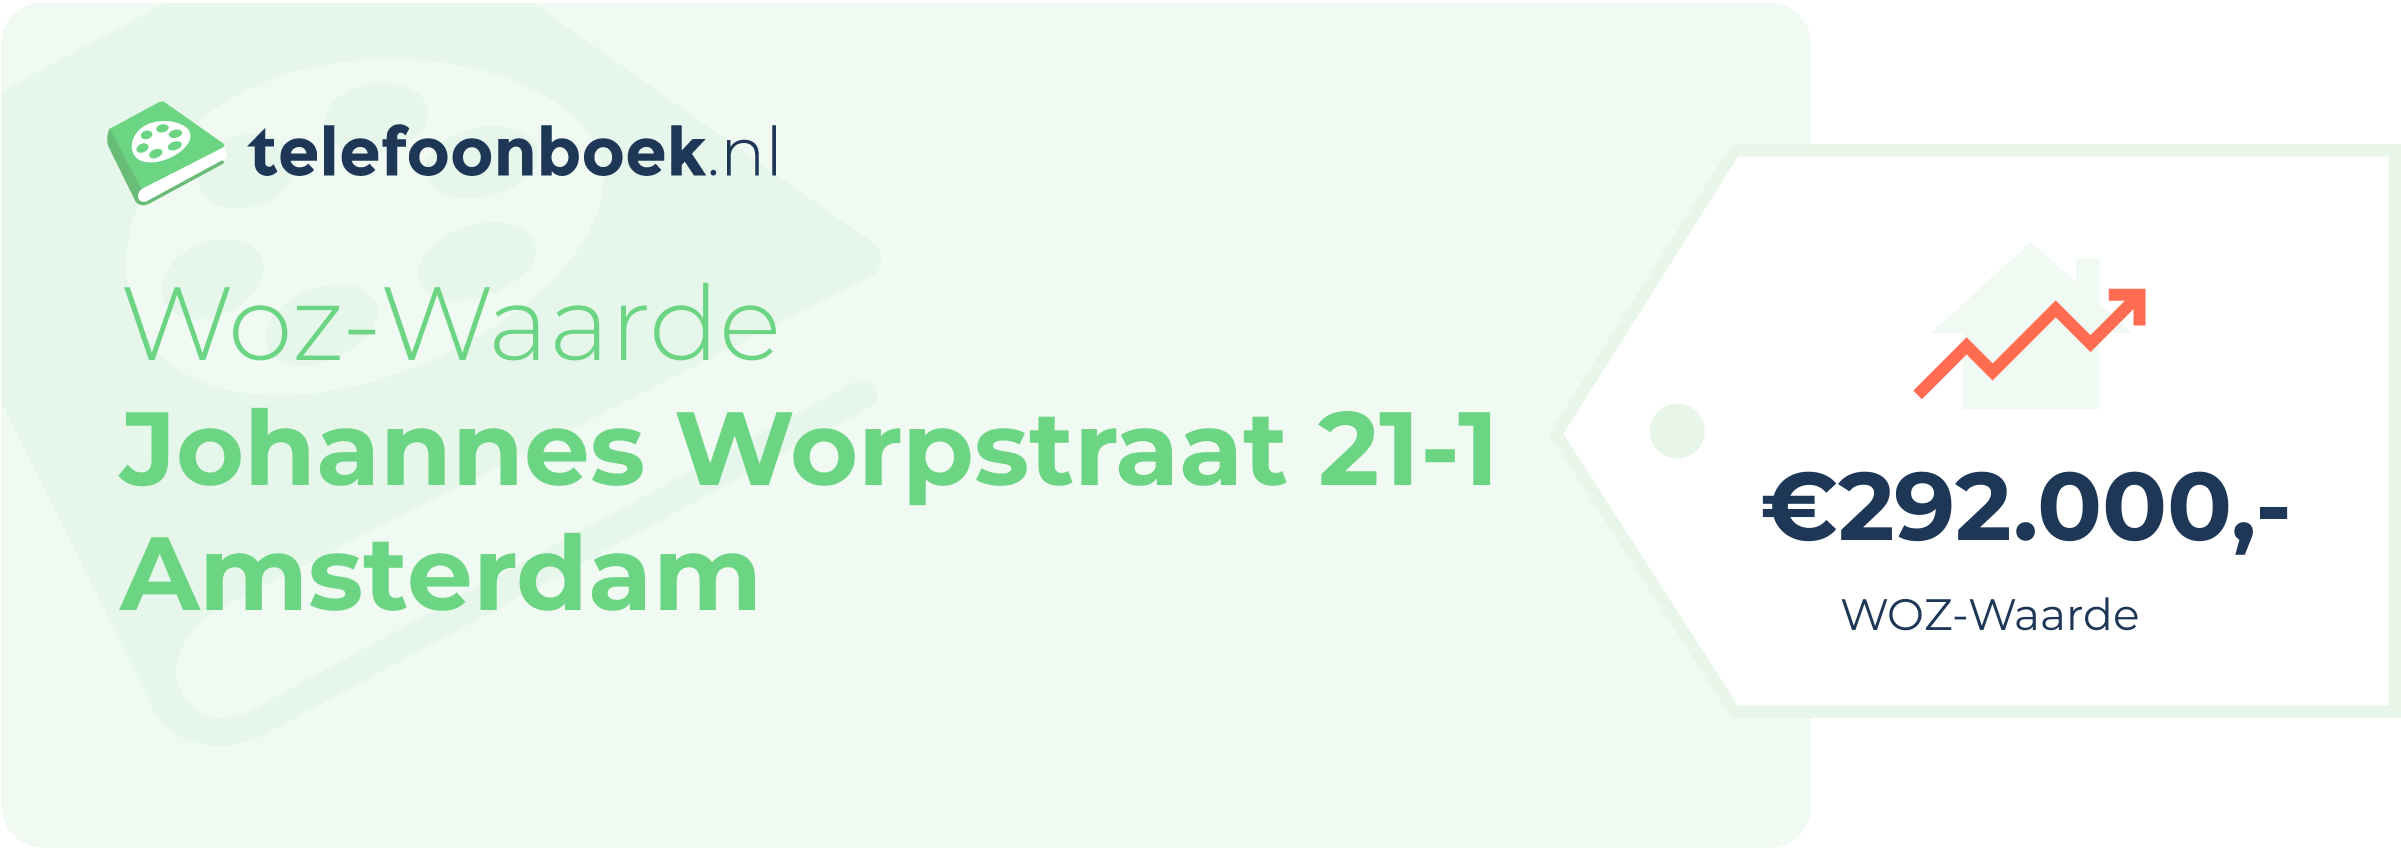 WOZ-waarde Johannes Worpstraat 21-1 Amsterdam